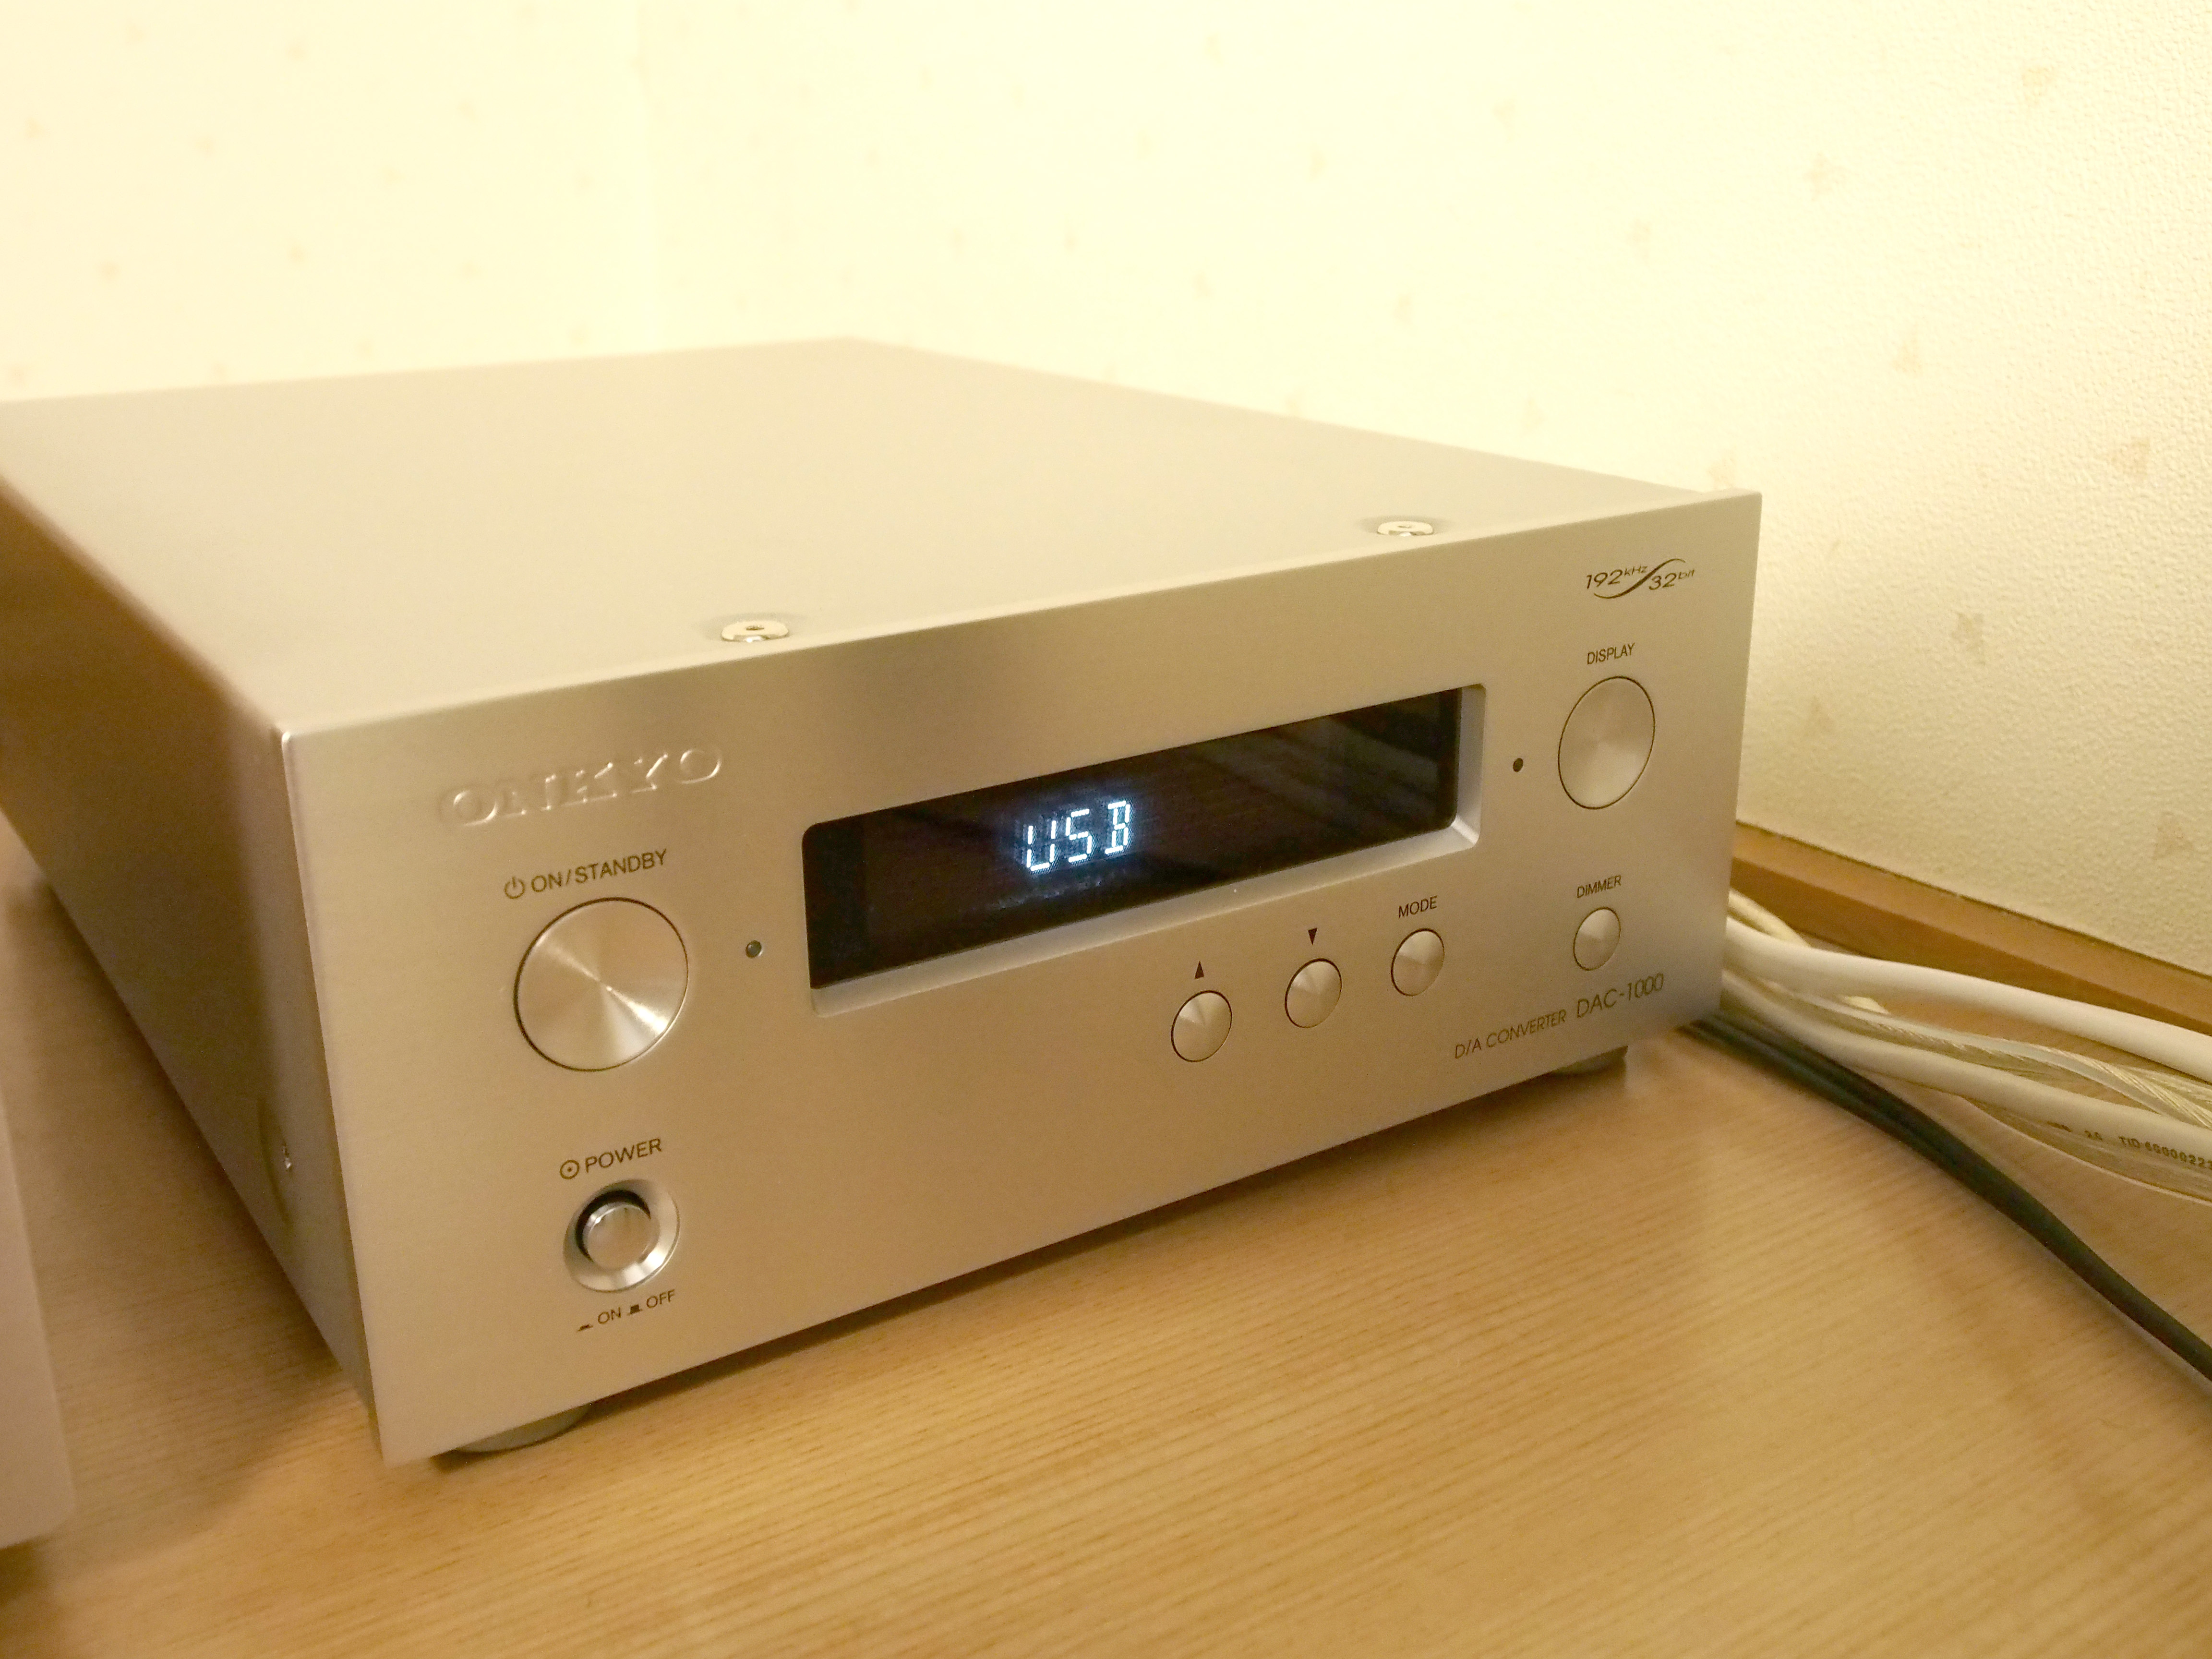 オーディオ機器 アンプ ONKYO DAC-1000 (D/Aコンバーター) のレビュー | iPentec